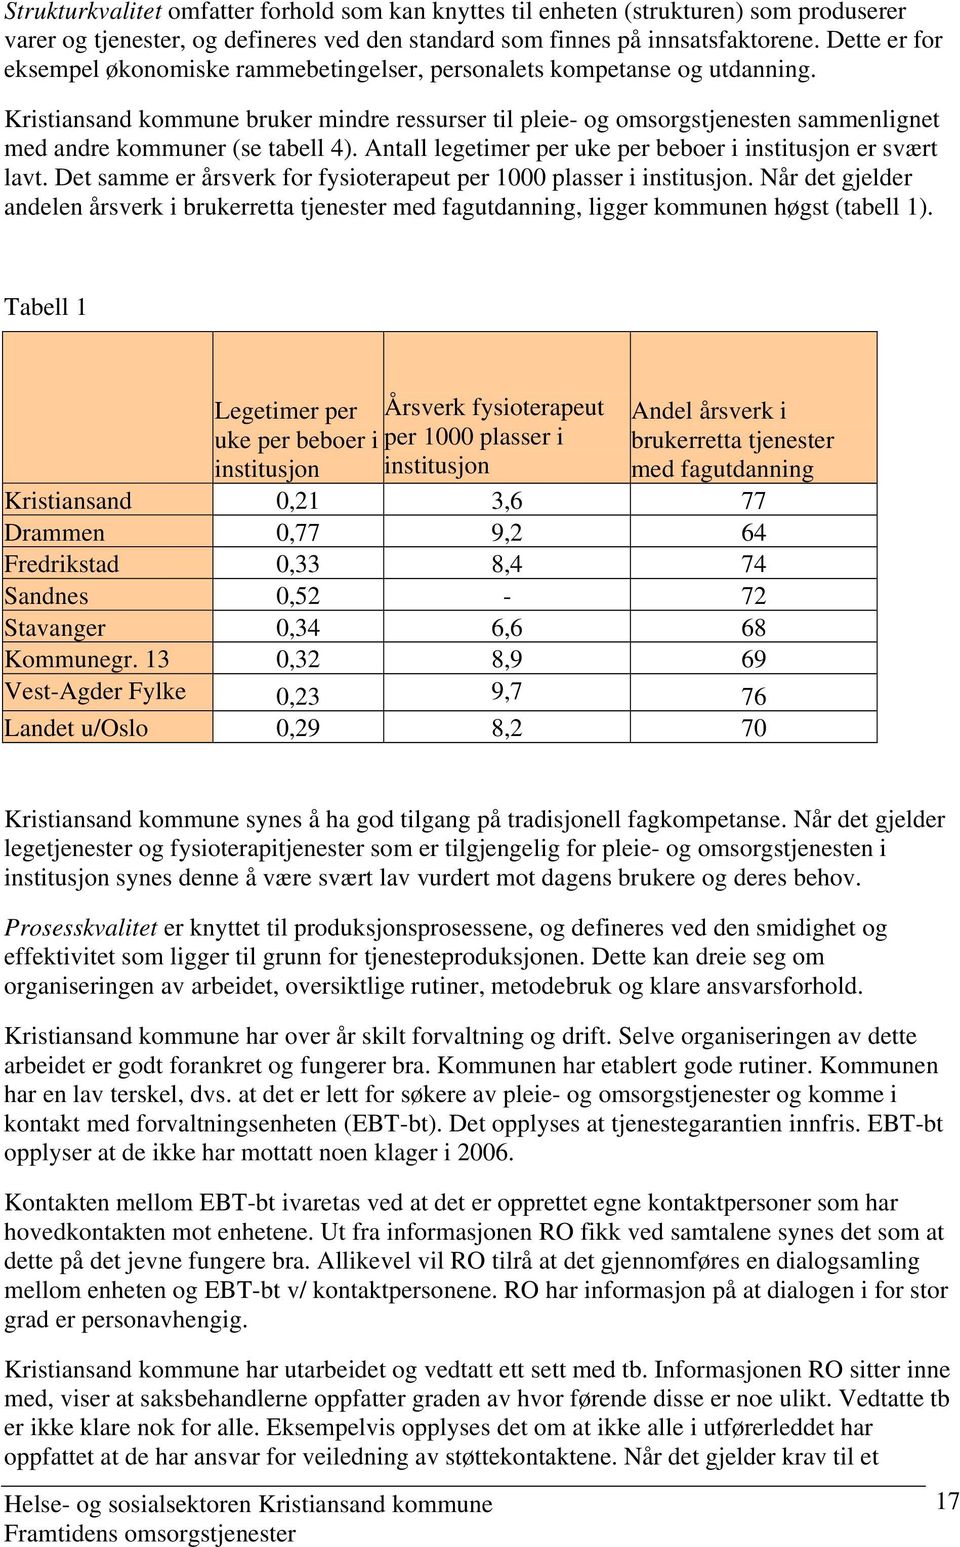 Kristiansand kommune bruker mindre ressurser til pleie- og omsorgstjenesten sammenlignet med andre kommuner (se tabell 4). Antall legetimer per uke per beboer i institusjon er svært lavt.